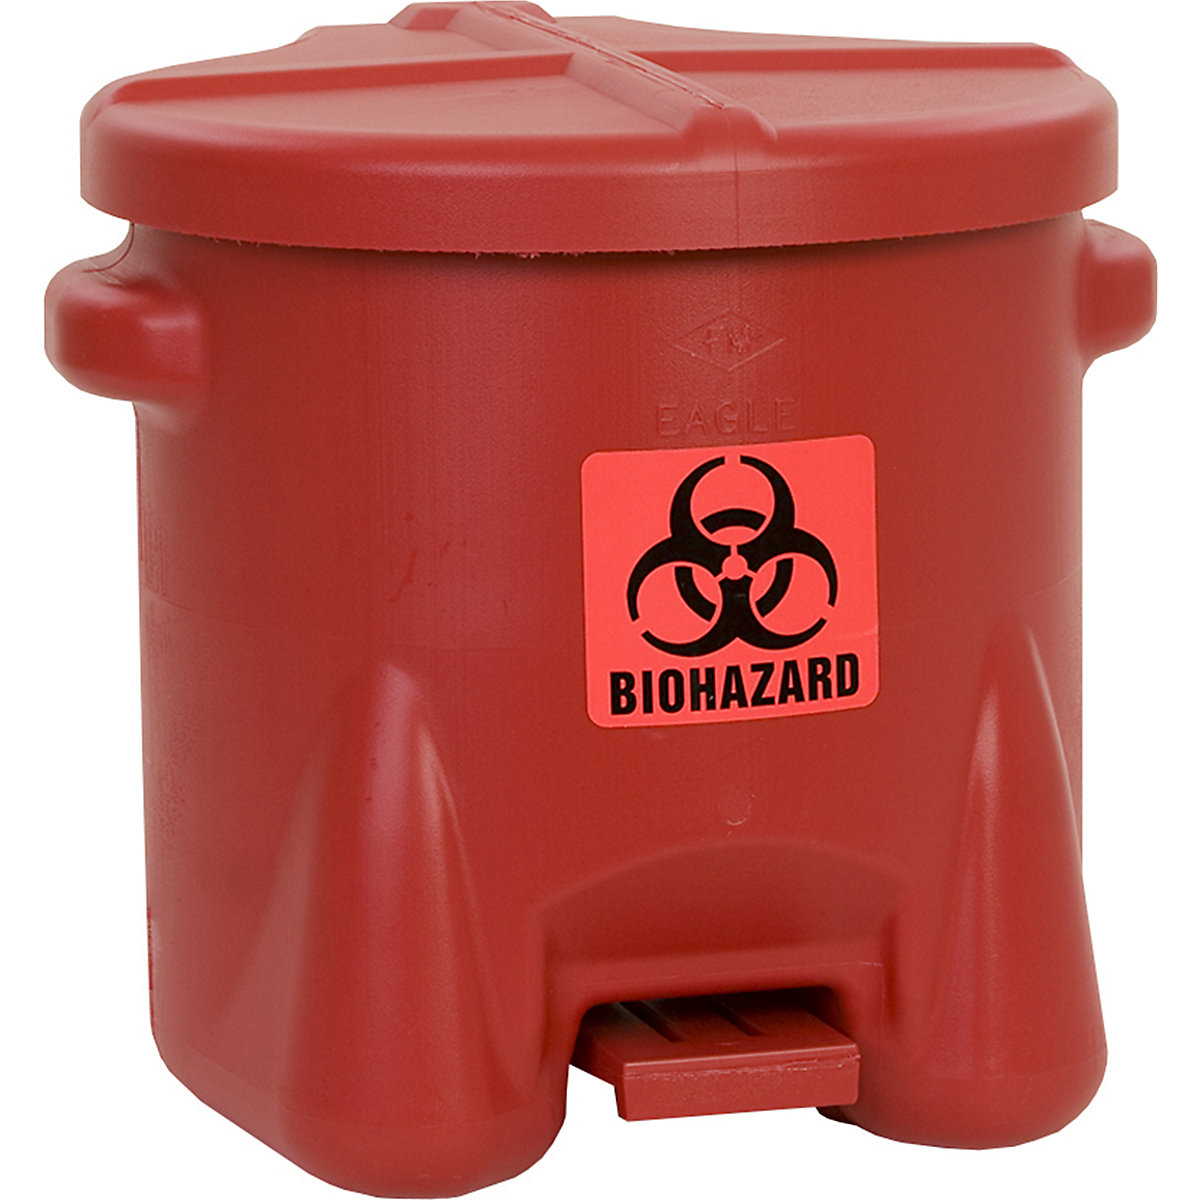 Bezpečnostná nádoba z PE plechu na likvidáciu biologických odpadov – Justrite